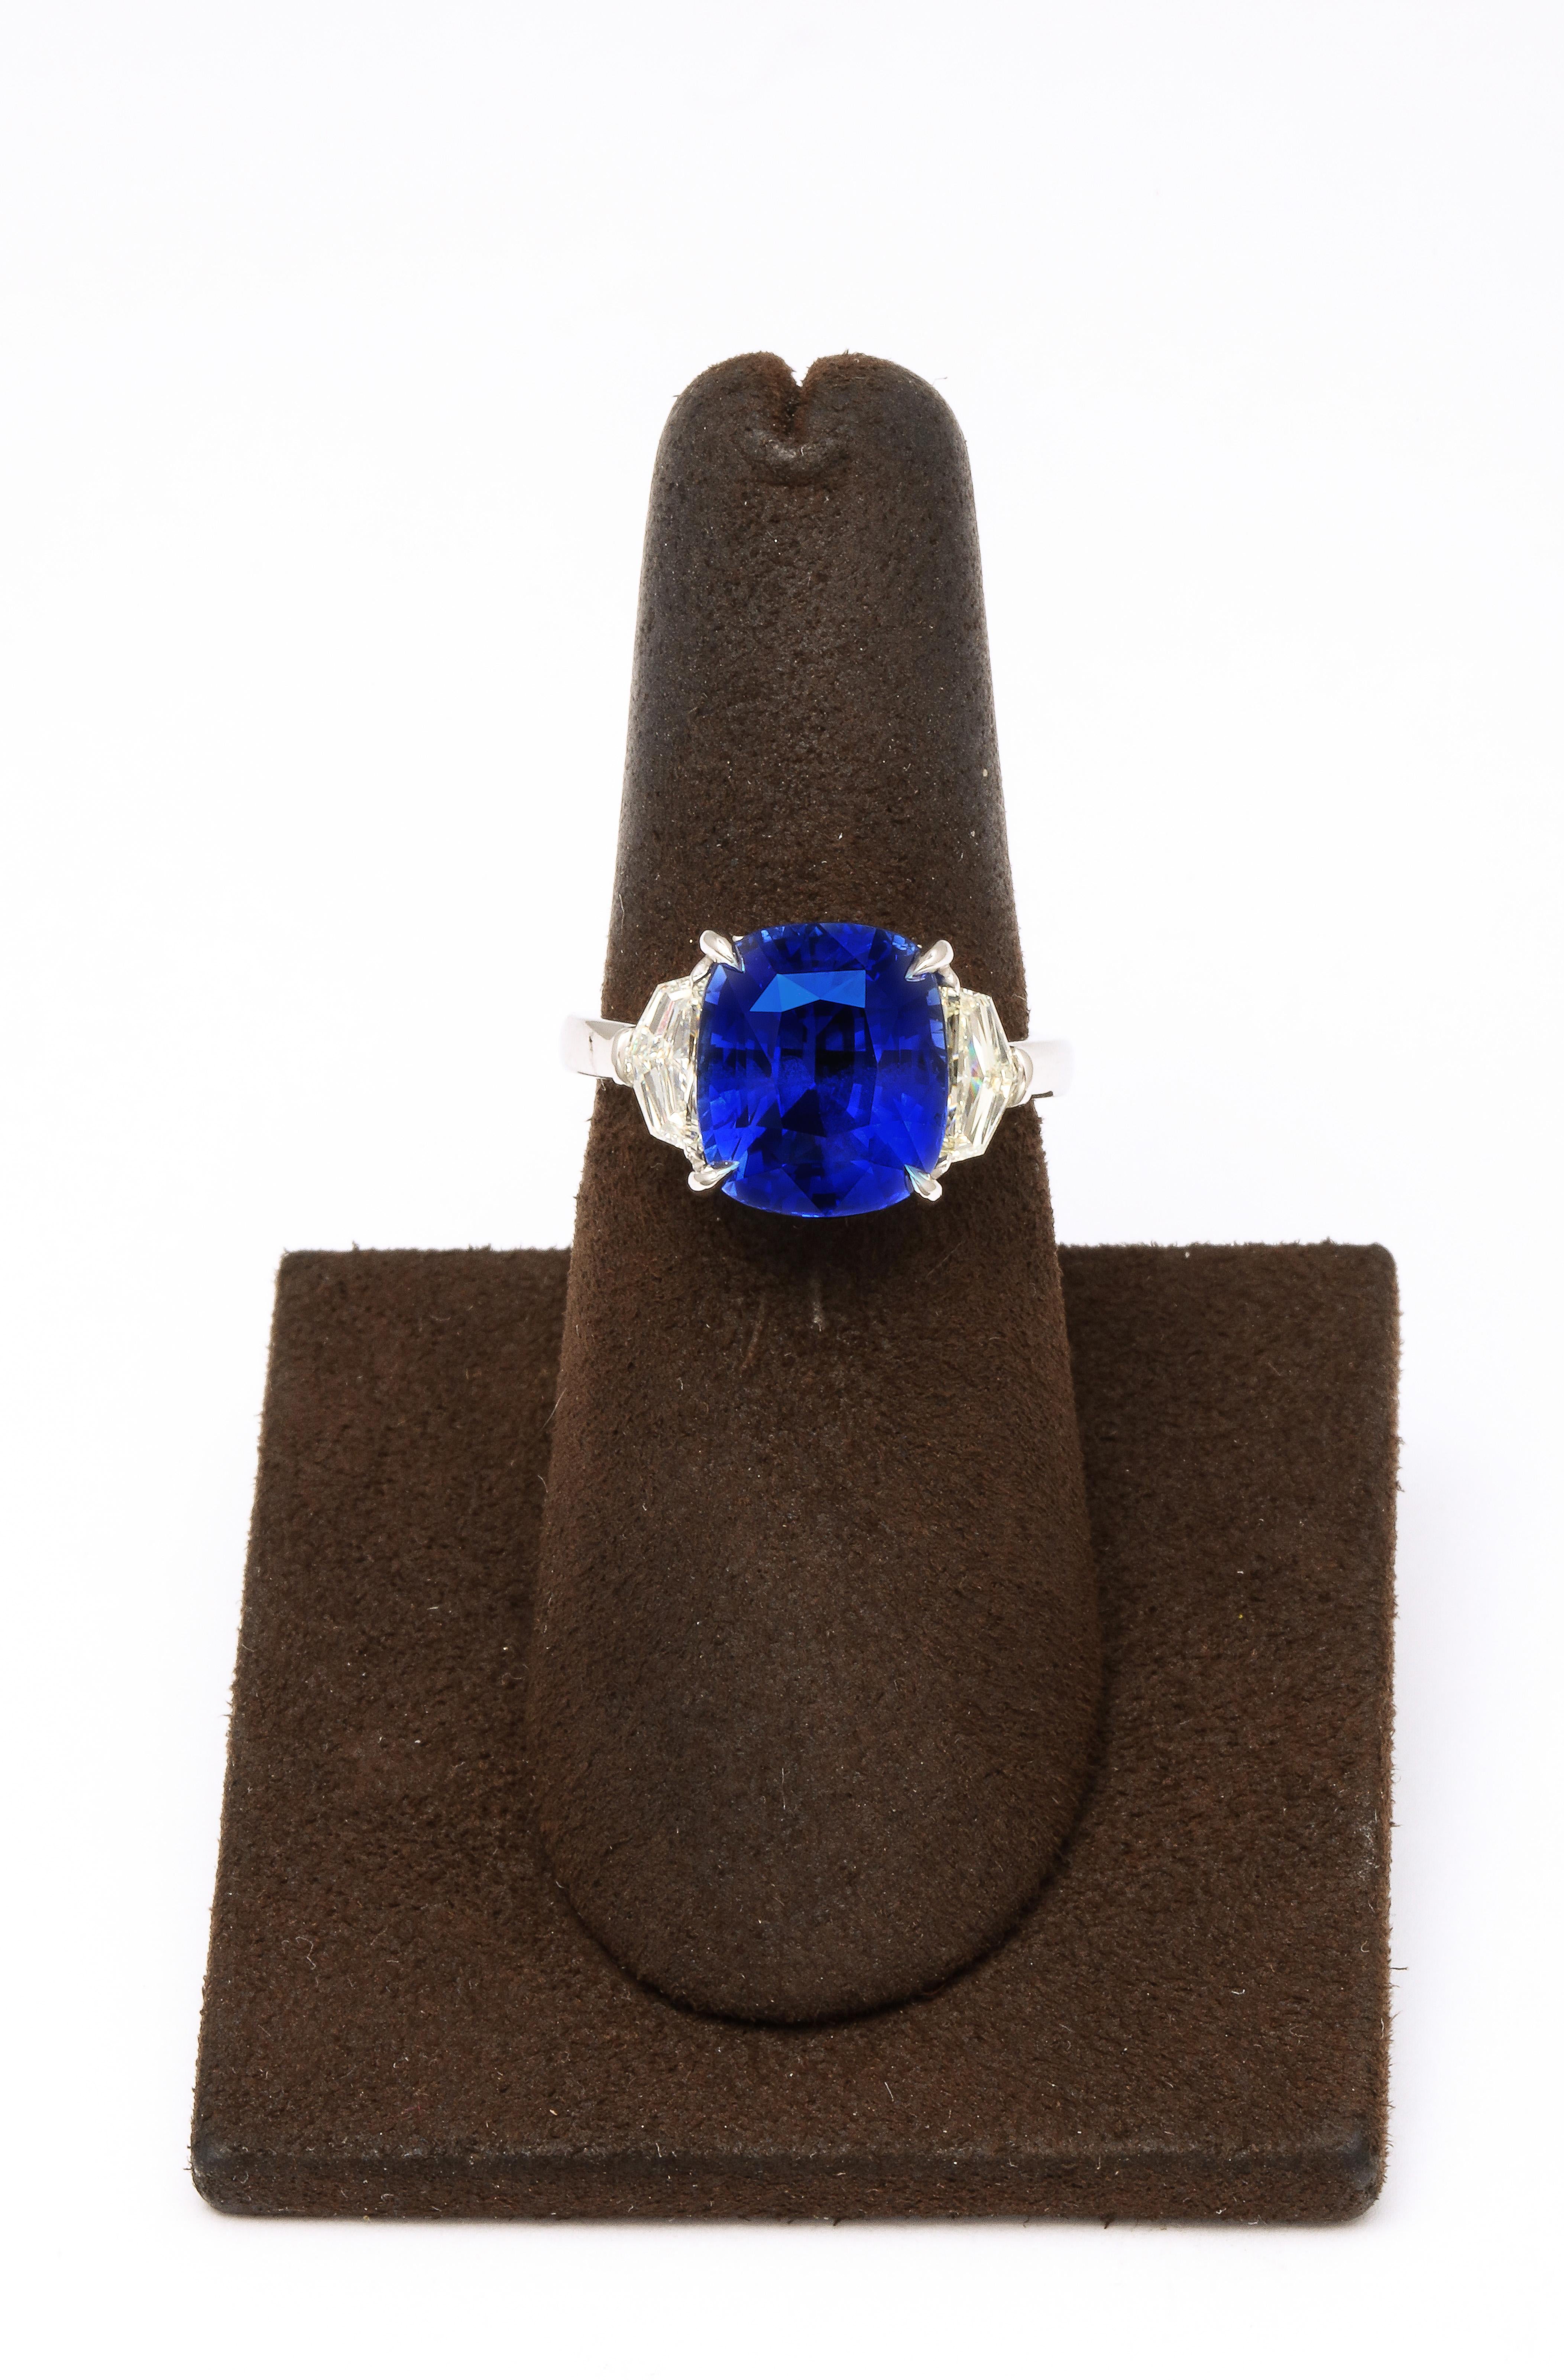 
Zertifizierter 7,16 Karat Ceylon Blue Sapphire im Kissenschliff. 

.73 Karat weiße Diamanten auf der Seite des Epauletts. 

Platinmontierung nach Maß 

Zertifiziert von Christian Dunaigre aus der Schweiz

Derzeit Größe 6,25, kann dieser Ring auf